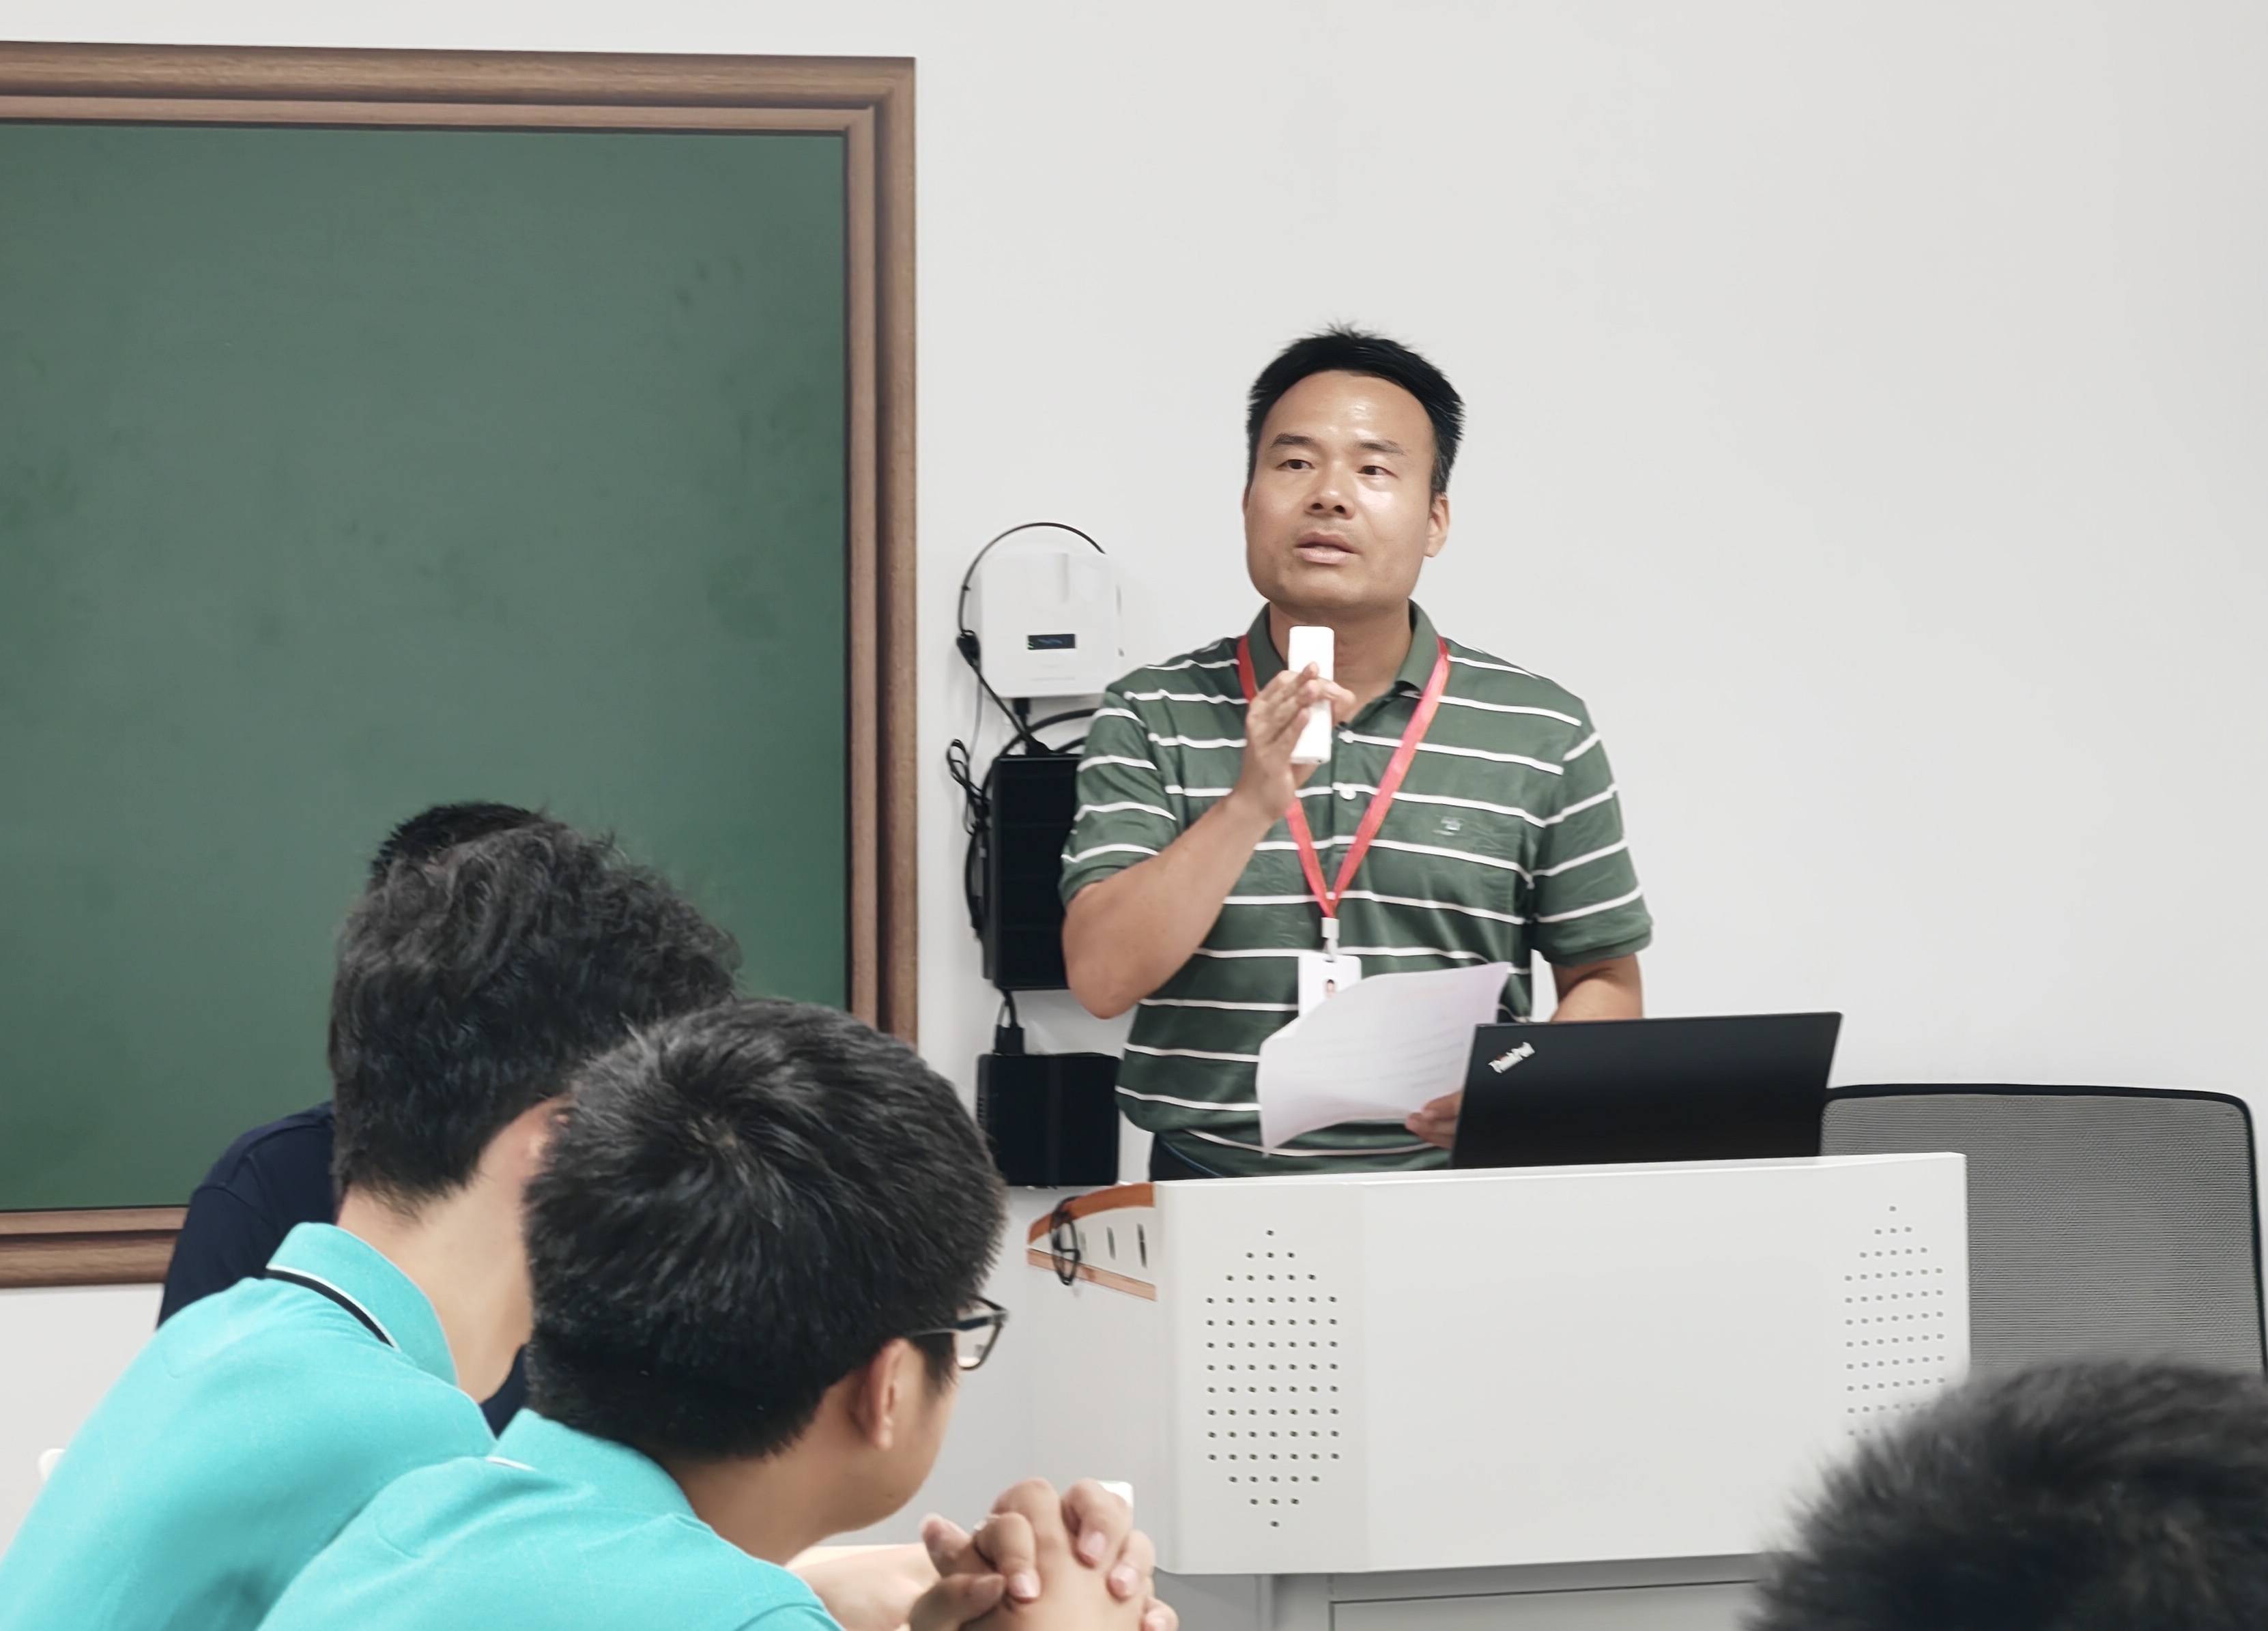 立达信数字教育与深圳职业技术大学共建劳动教育示范基地